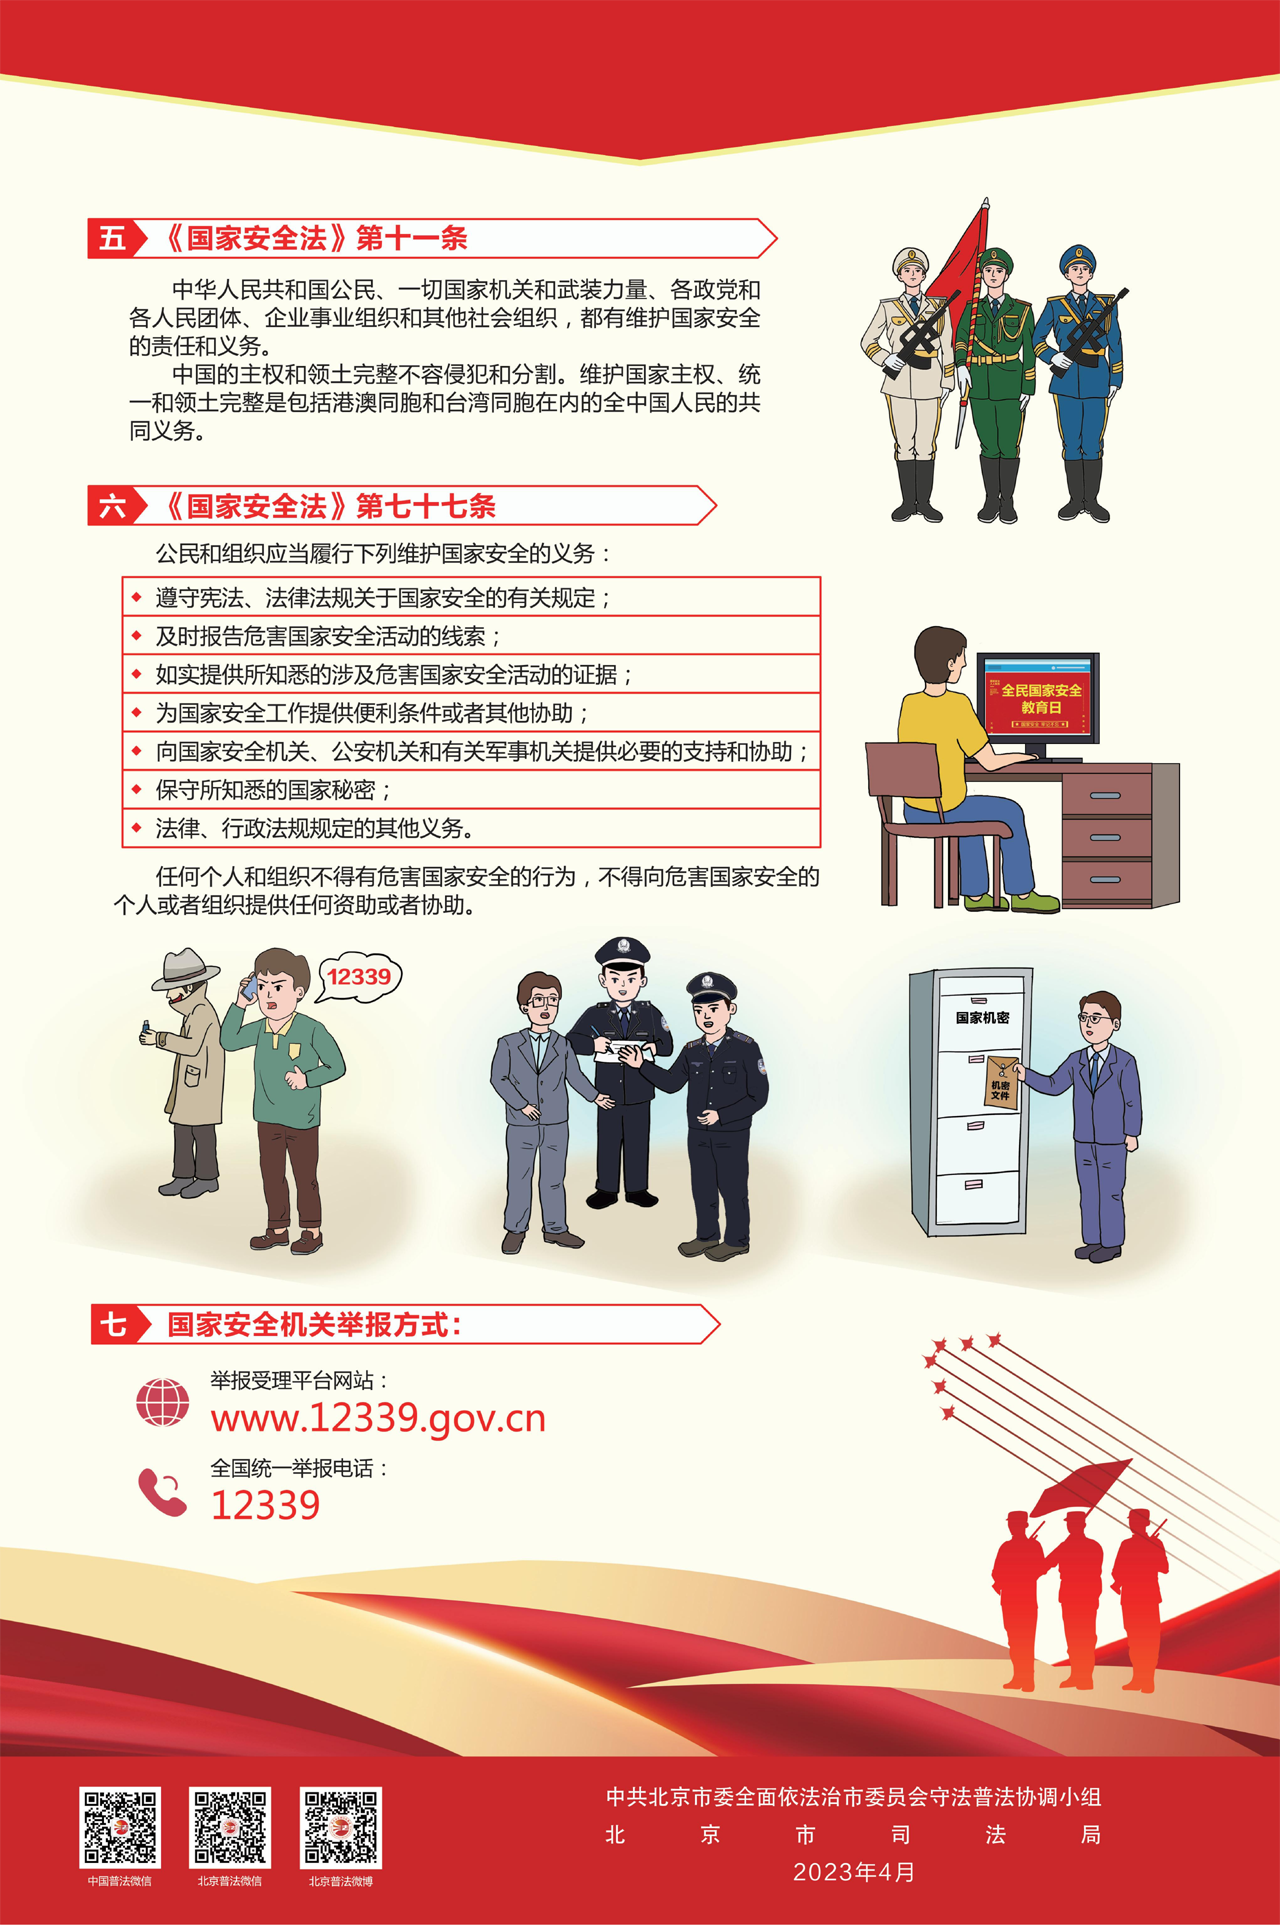 北京市普法宣传挂图第二期-2